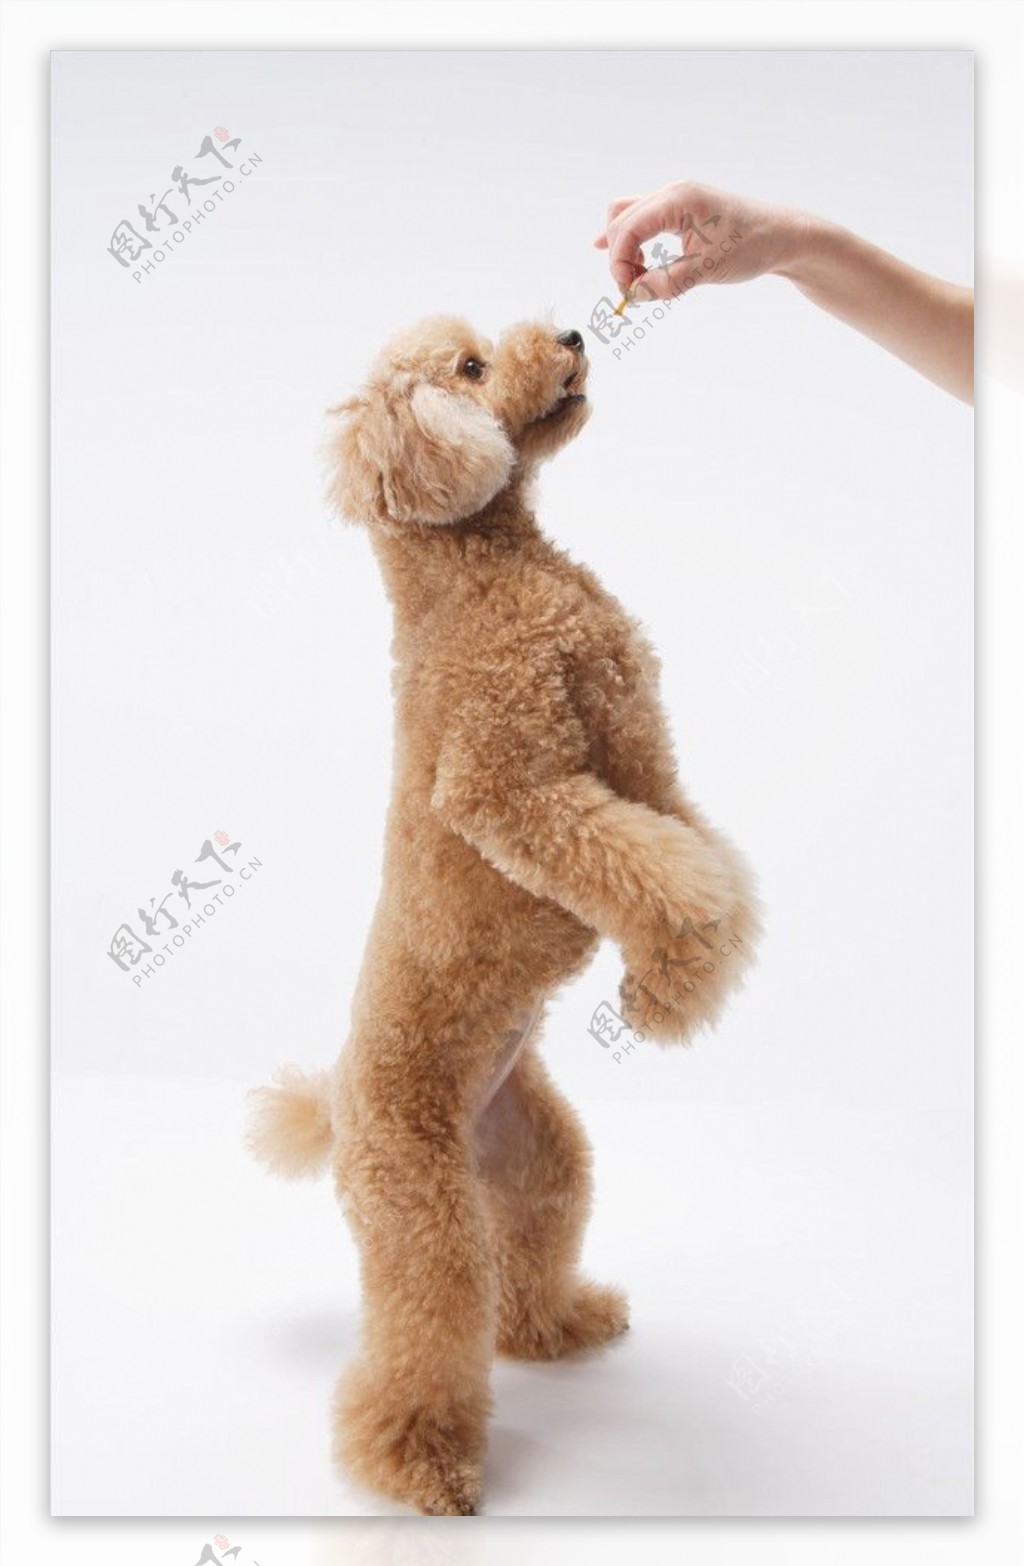 纯种泰迪 宠物贵宾 红色泰迪犬 小体玩具泰迪狗狗出售 视频 支付宝 宝贝它 泰迪/贵宾 /编号10109300 - 宝贝它